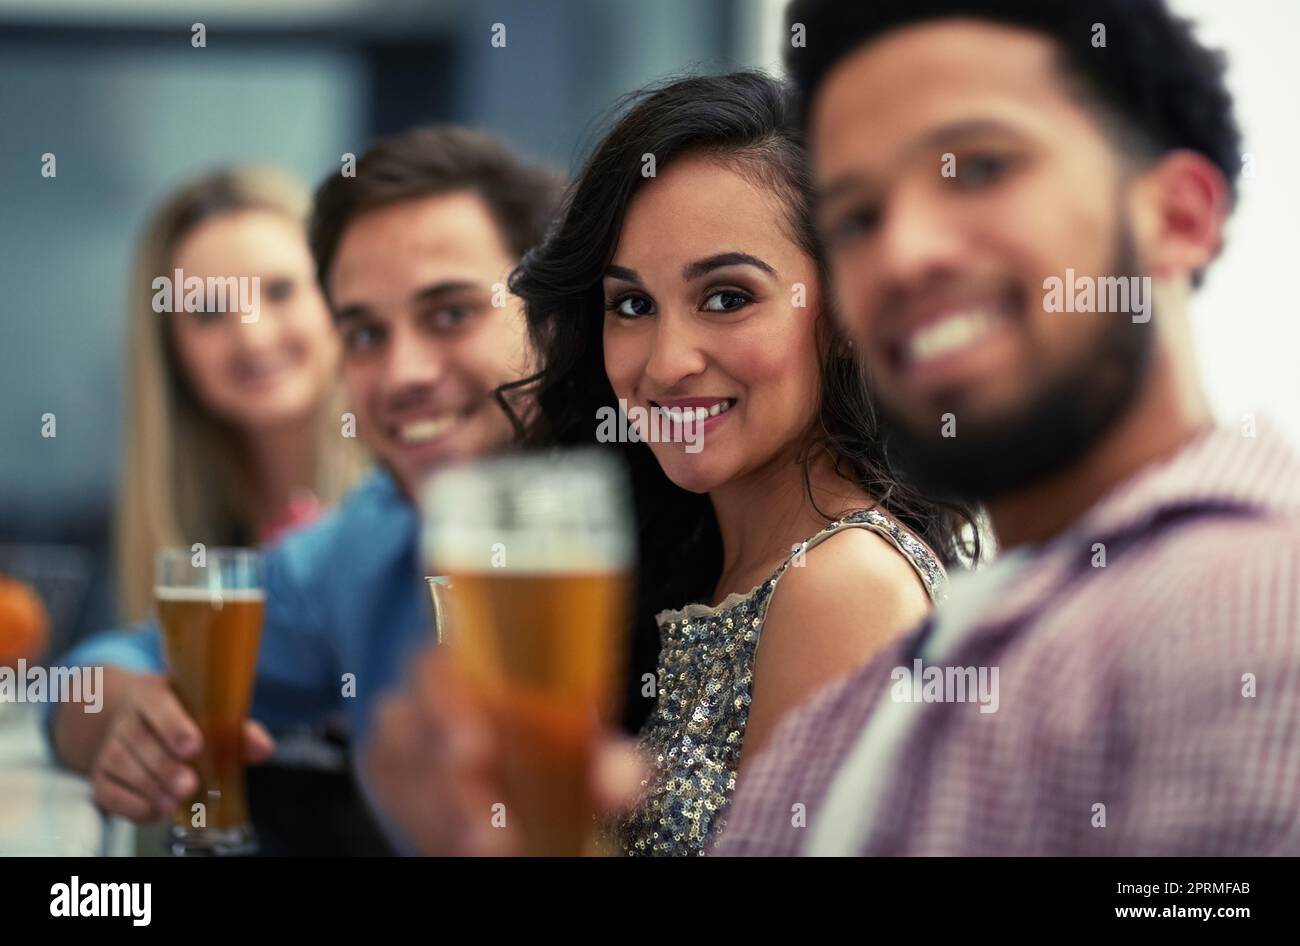 Laissez les bons moments se dérouler. Portrait d'un groupe d'amis heureux prenant des boissons dans un bar. Banque D'Images